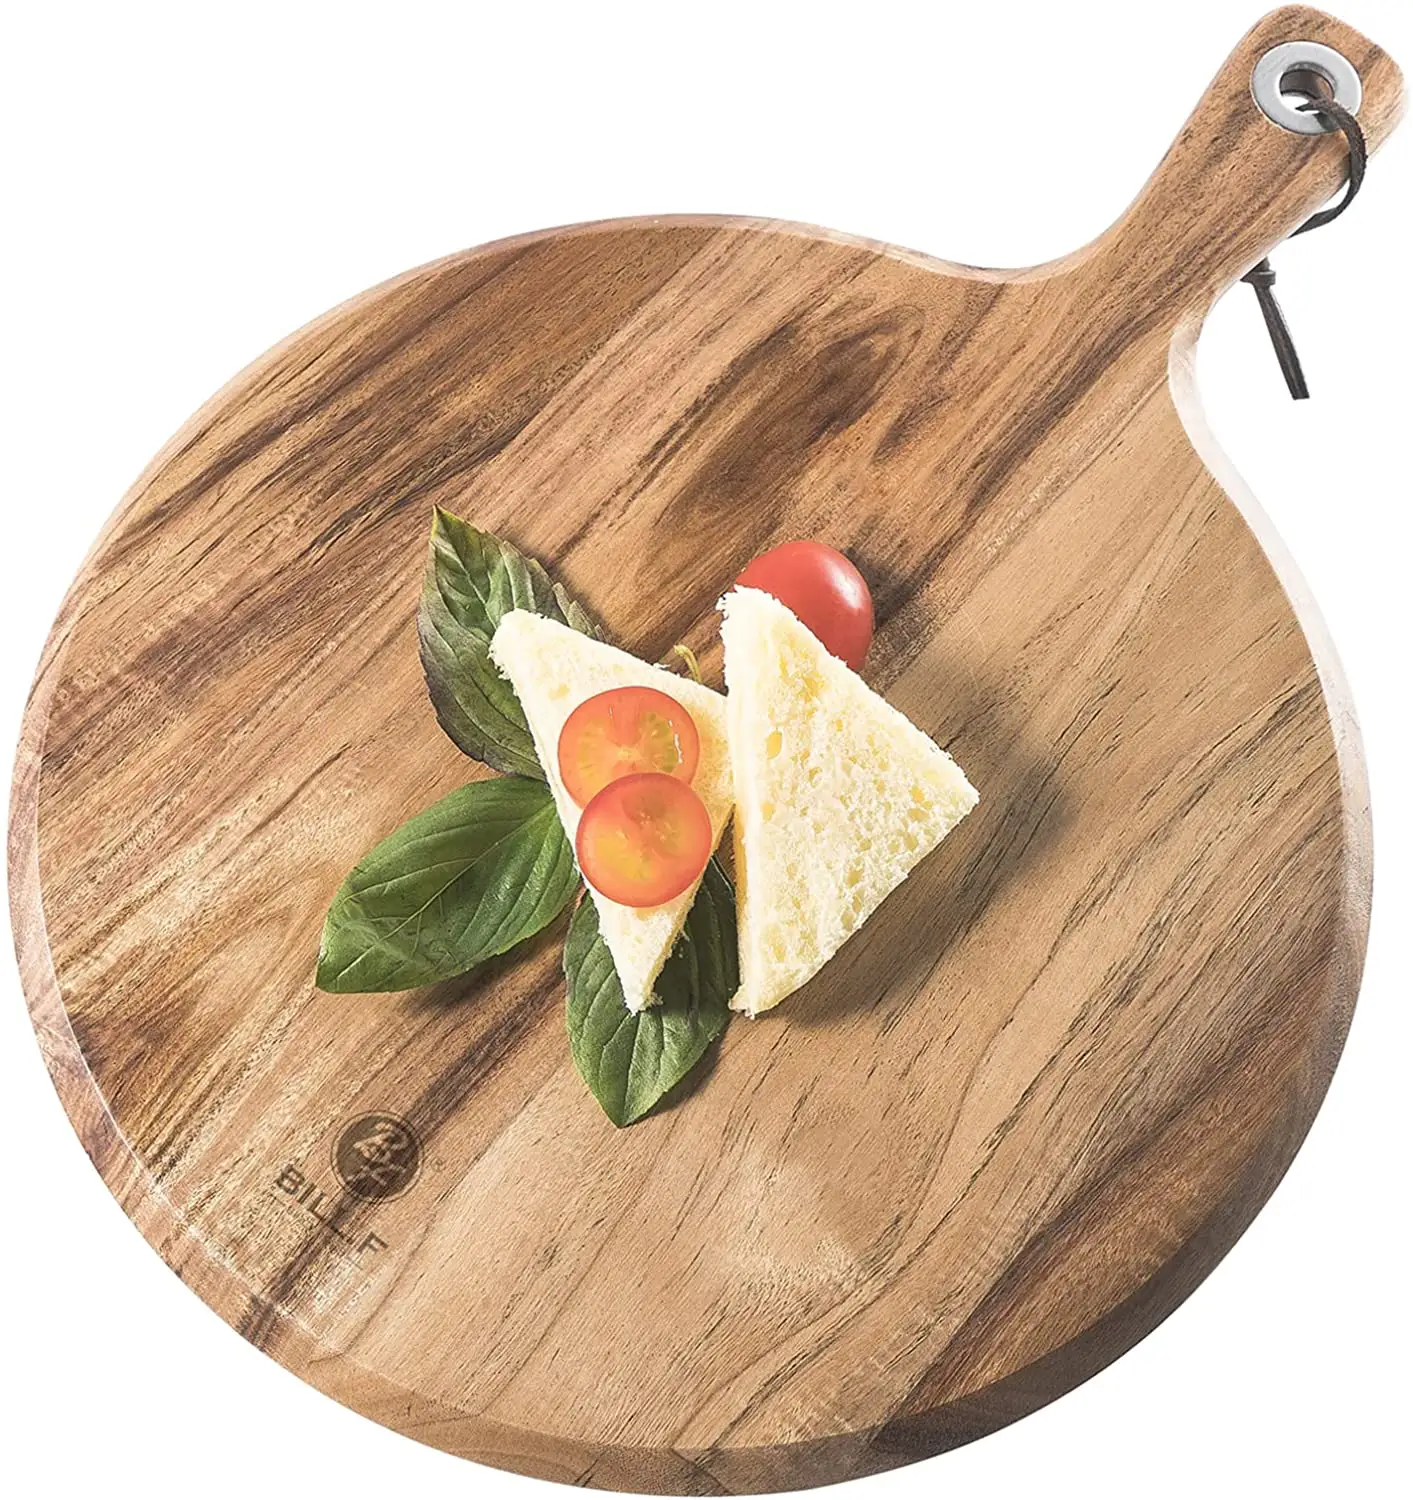 カスタムホーム家庭用レストランフルーツサービングまな板パンチーズステーキ用ハンドル付き刻まれた固体木製まな板